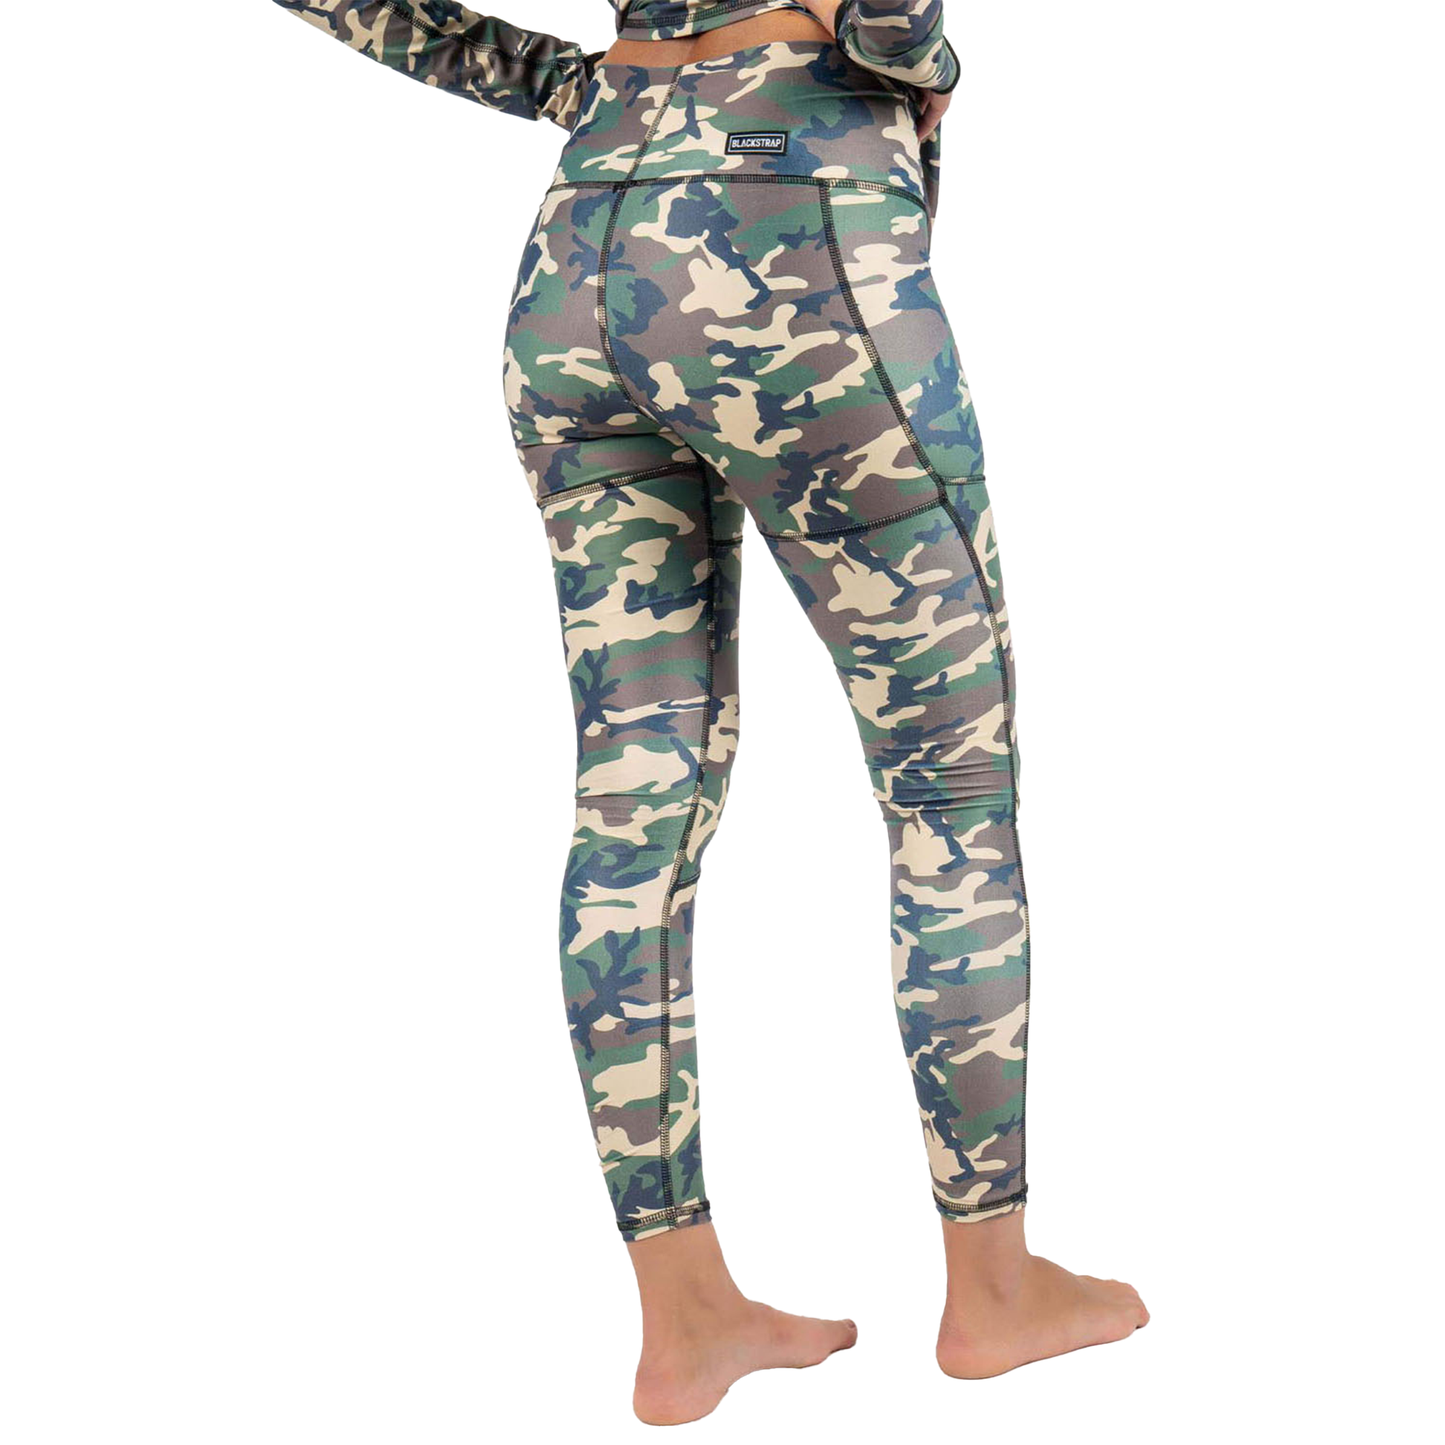 Blackstrap Women's Cloudchaser Baselayer Pant Camo Drab Base Layer Pants